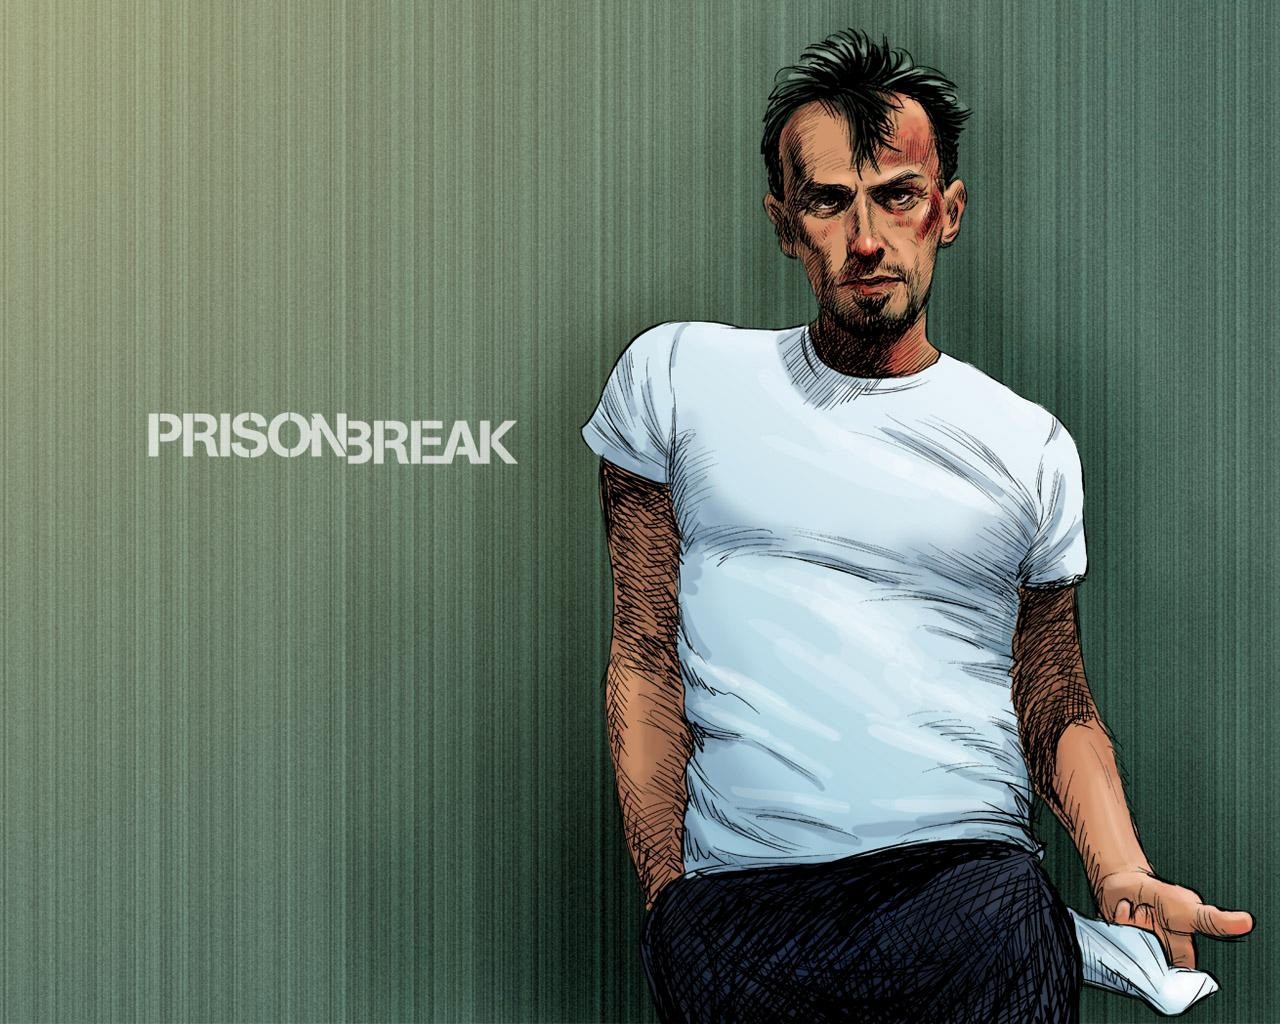 General 1280x1024 Prison Break TV series men artwork humor green